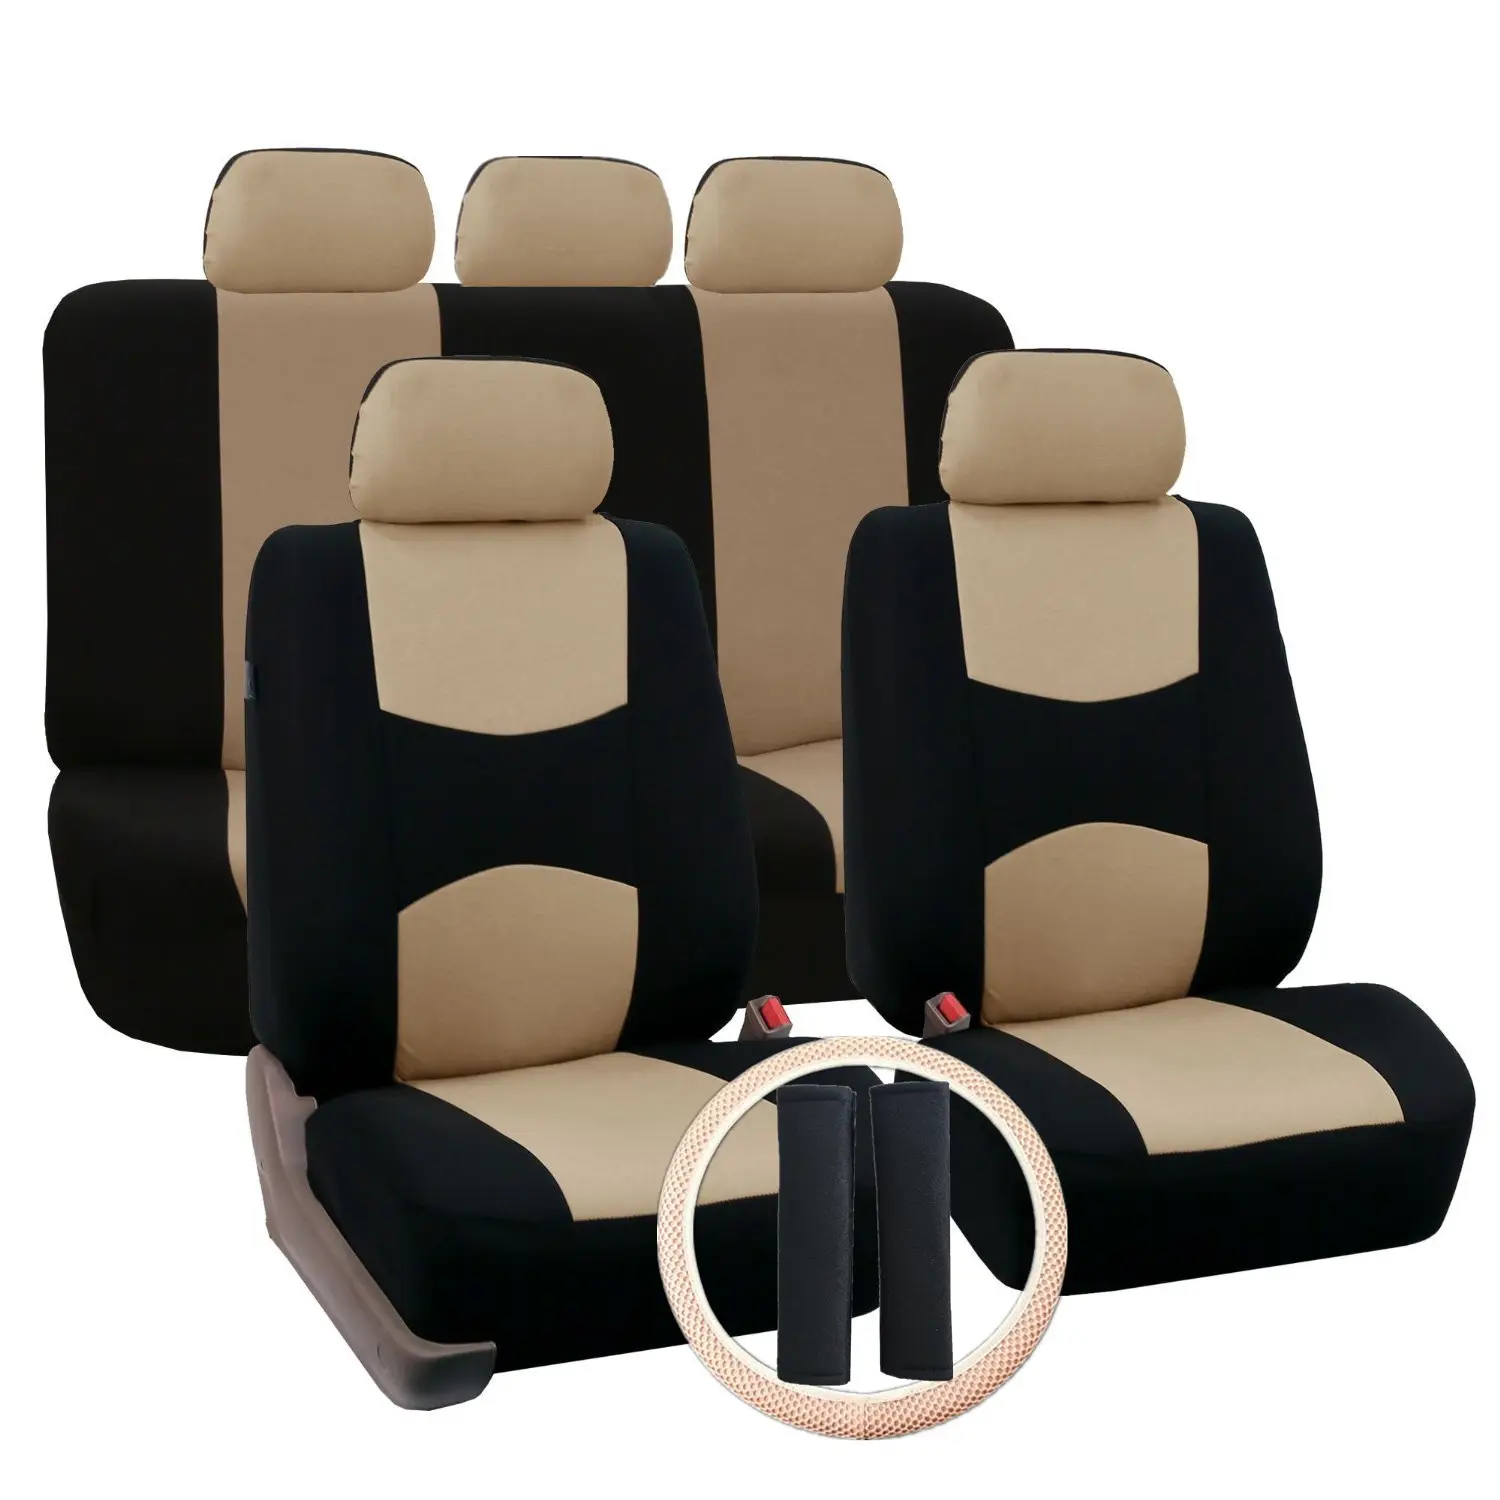 Capa para cobrir assento, capa de pano plano para volante, conjunto universal adequado para carros, caminhões